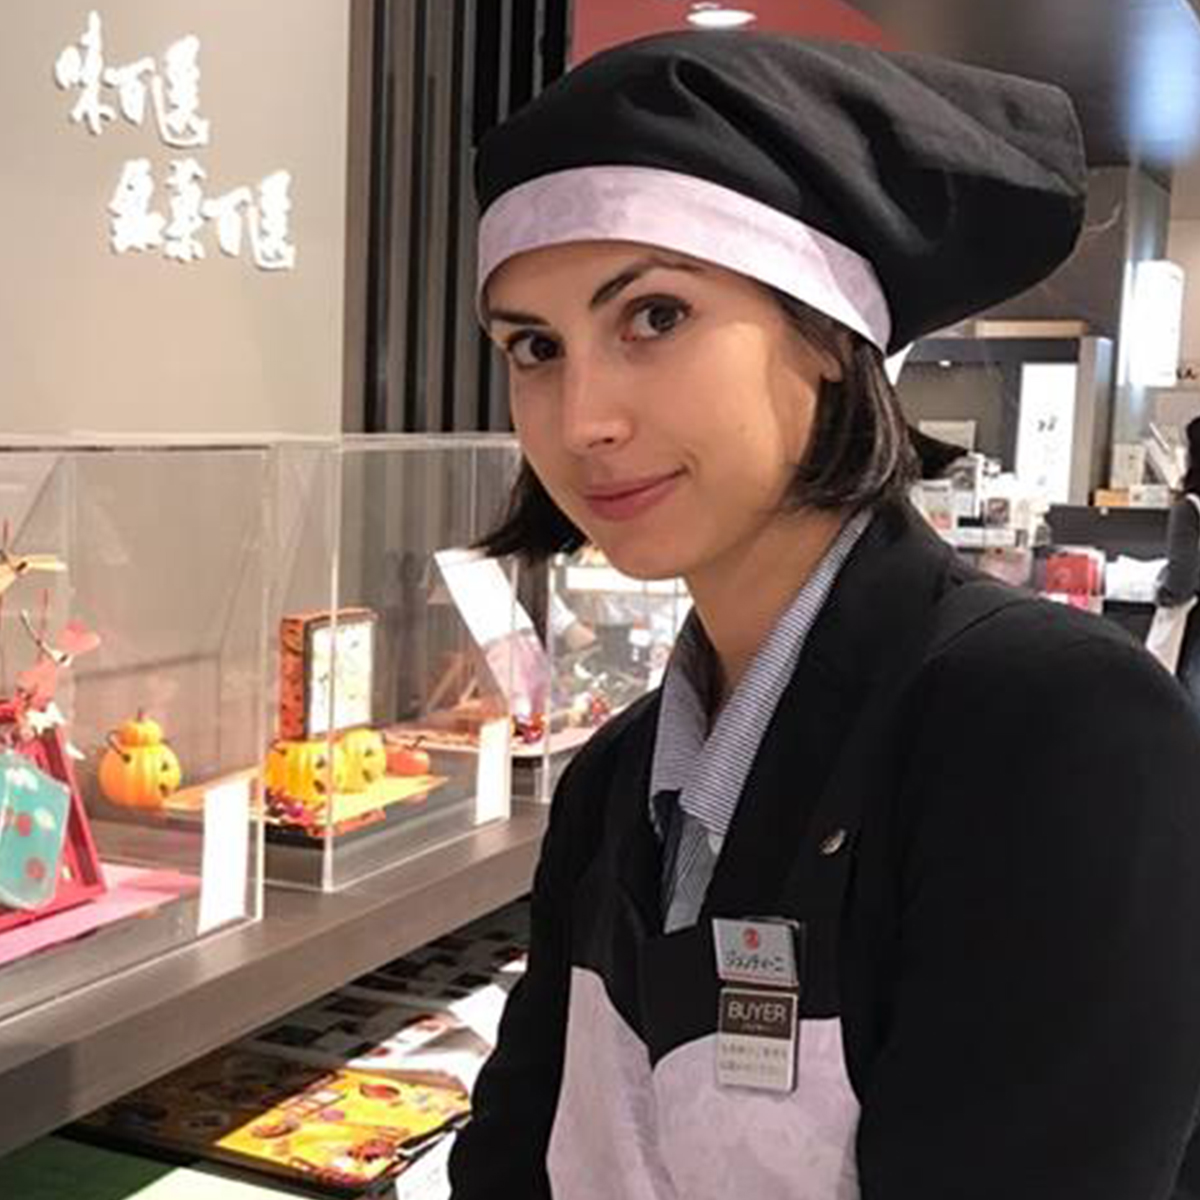 イタリア人和菓子バイヤーが日本の魅力を語る Trill トリル